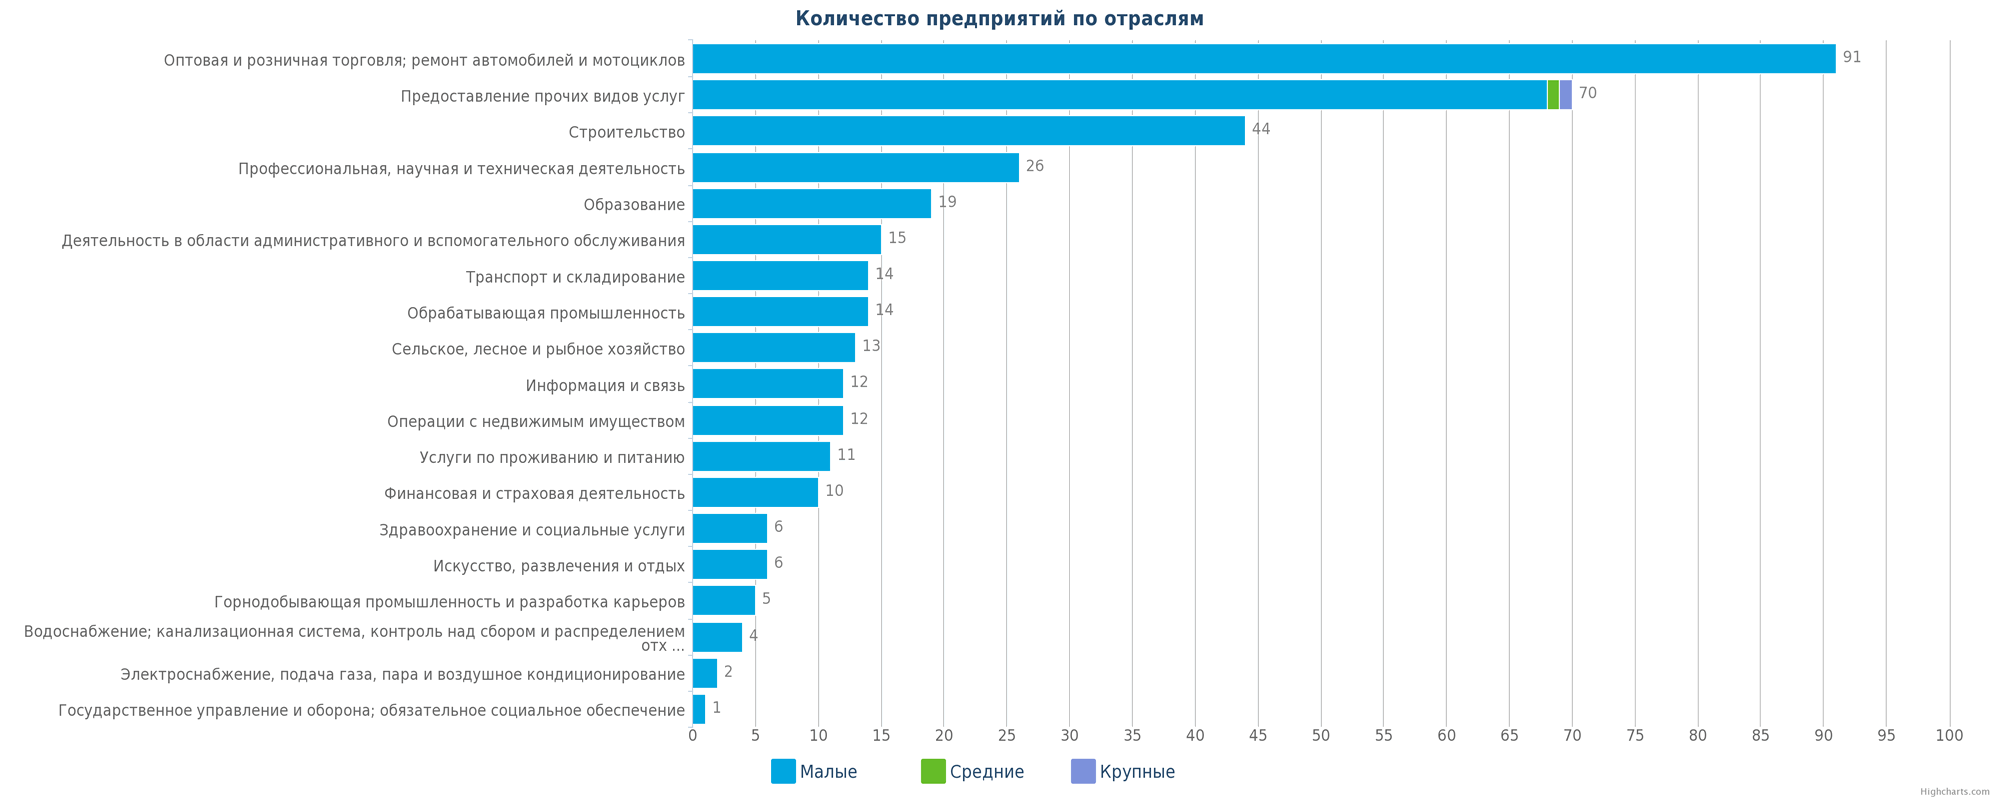 Количество новых юридических лиц в справочнике Казахстана по отраслям